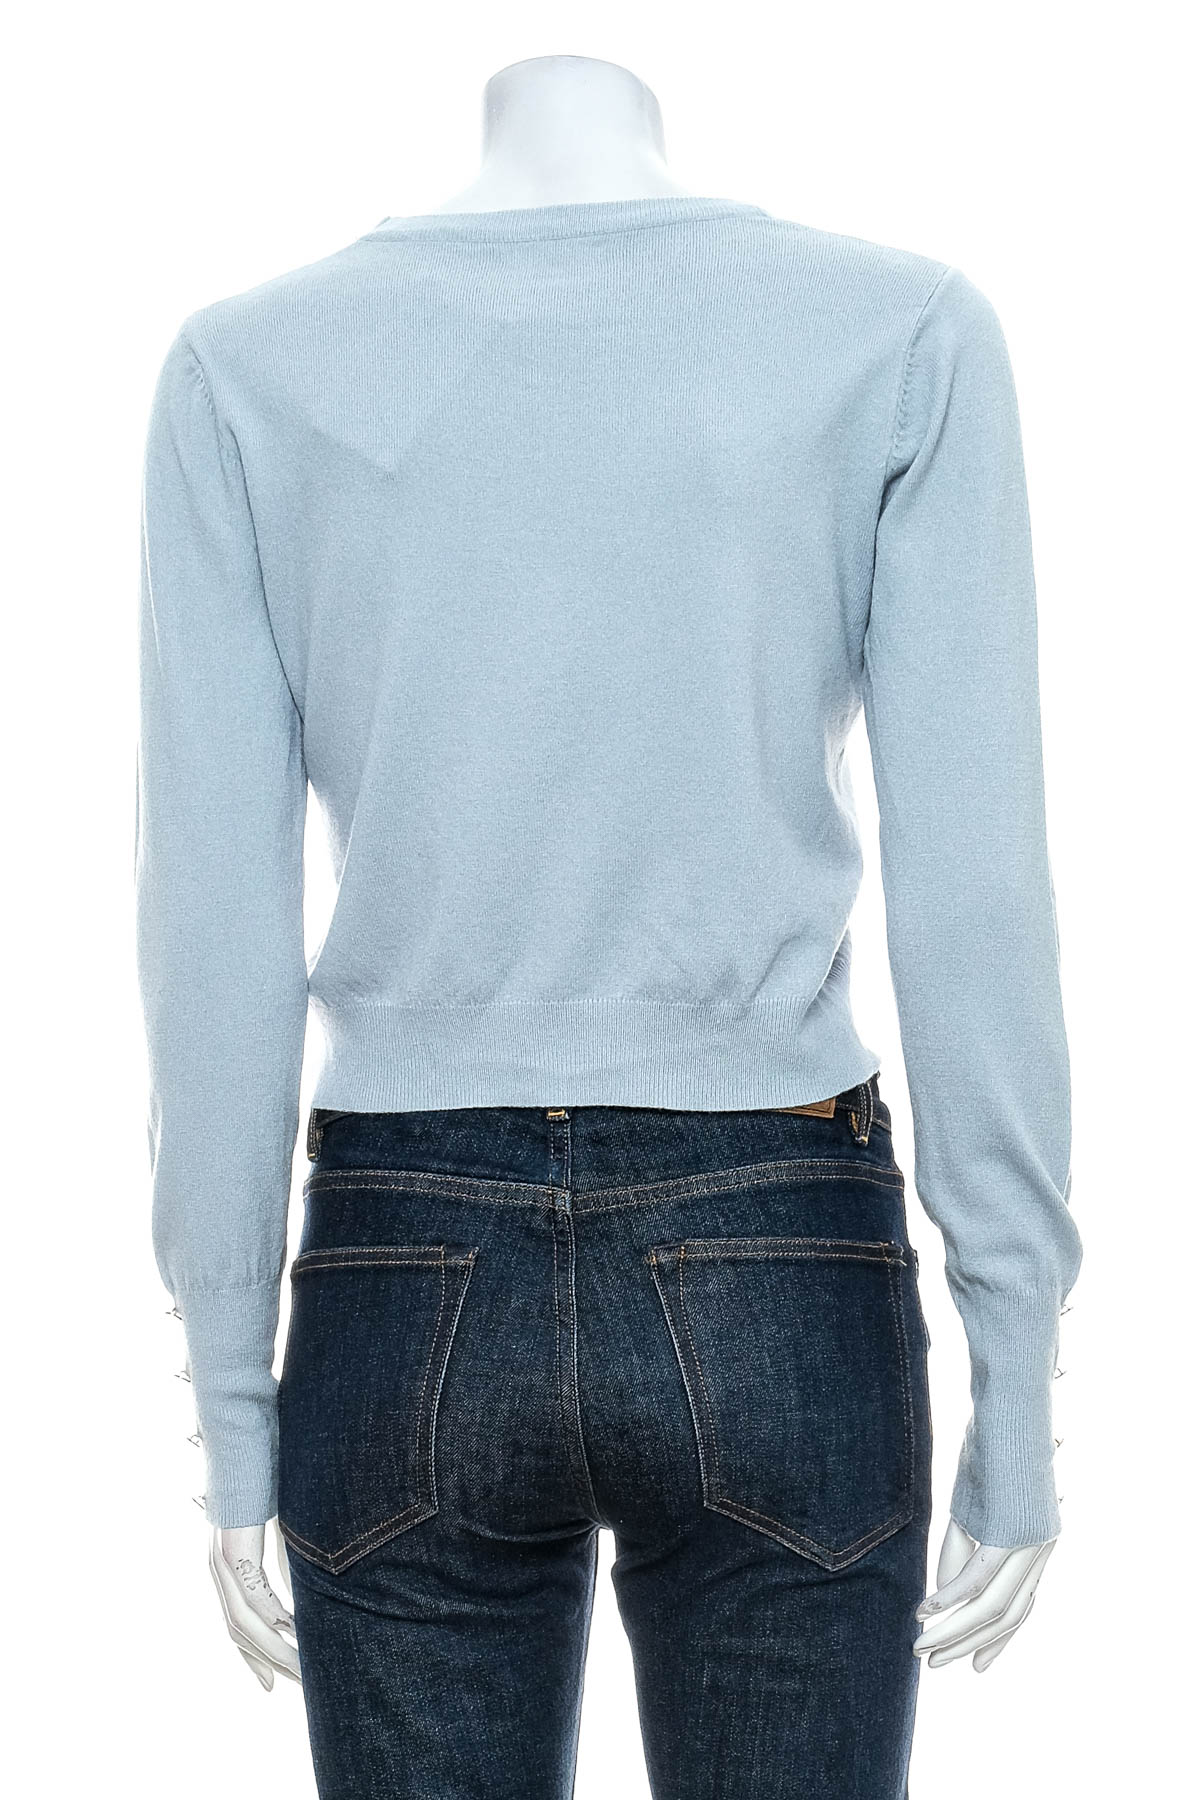 Women's sweater - Maliso - 1